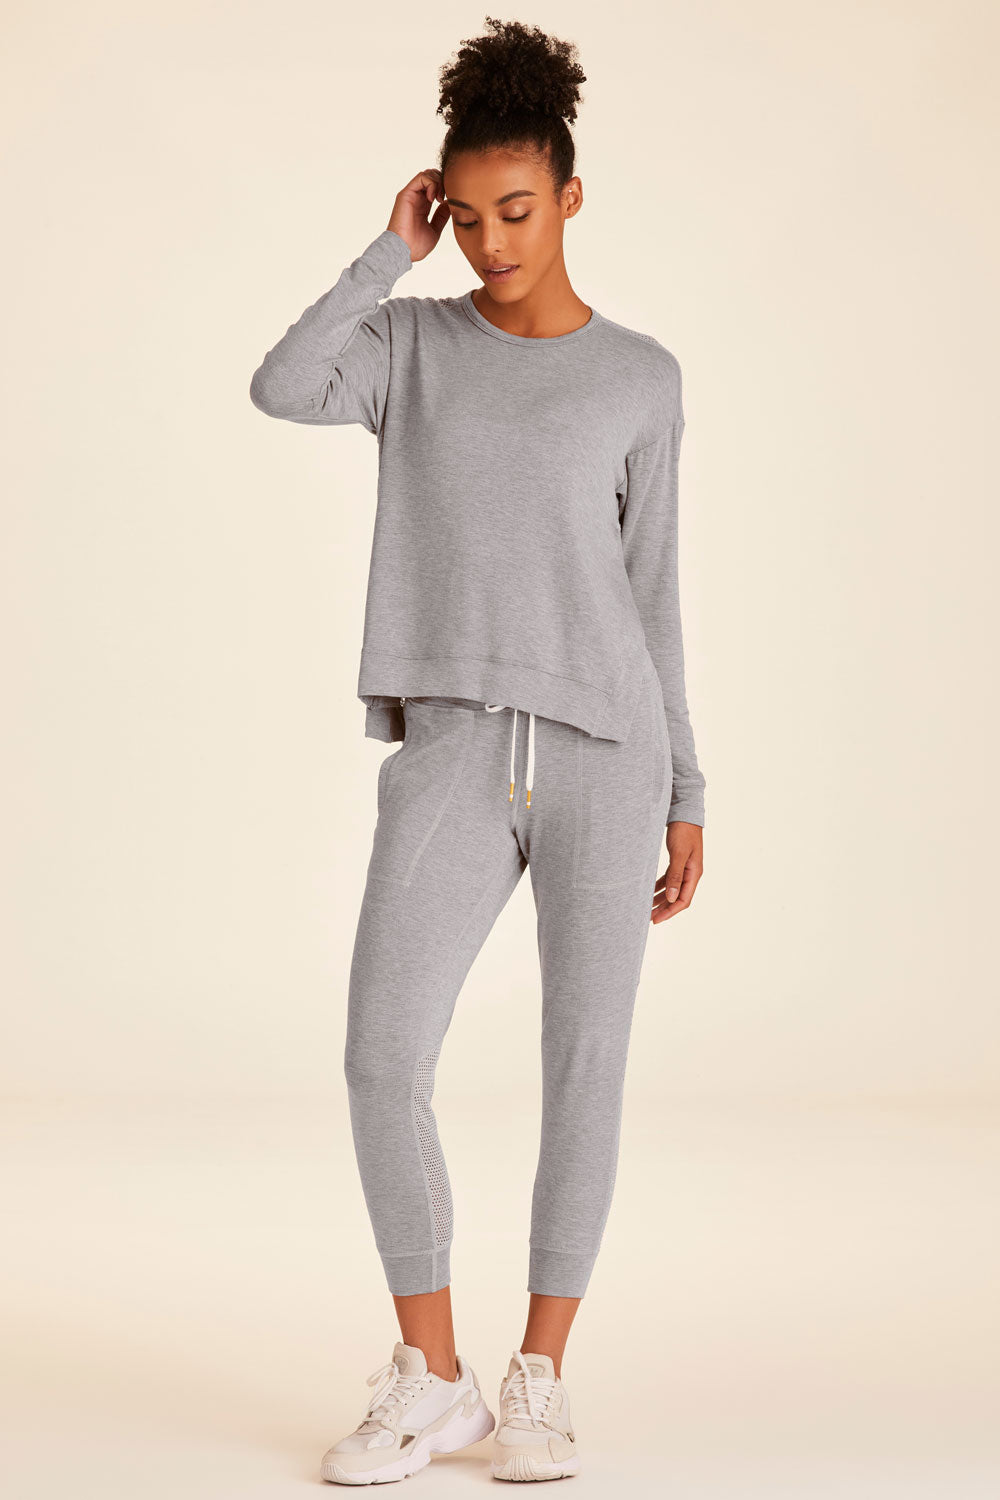 Heron Sweatshirt - Grey Sweatshirt | Workout Sweatshirt | Alala